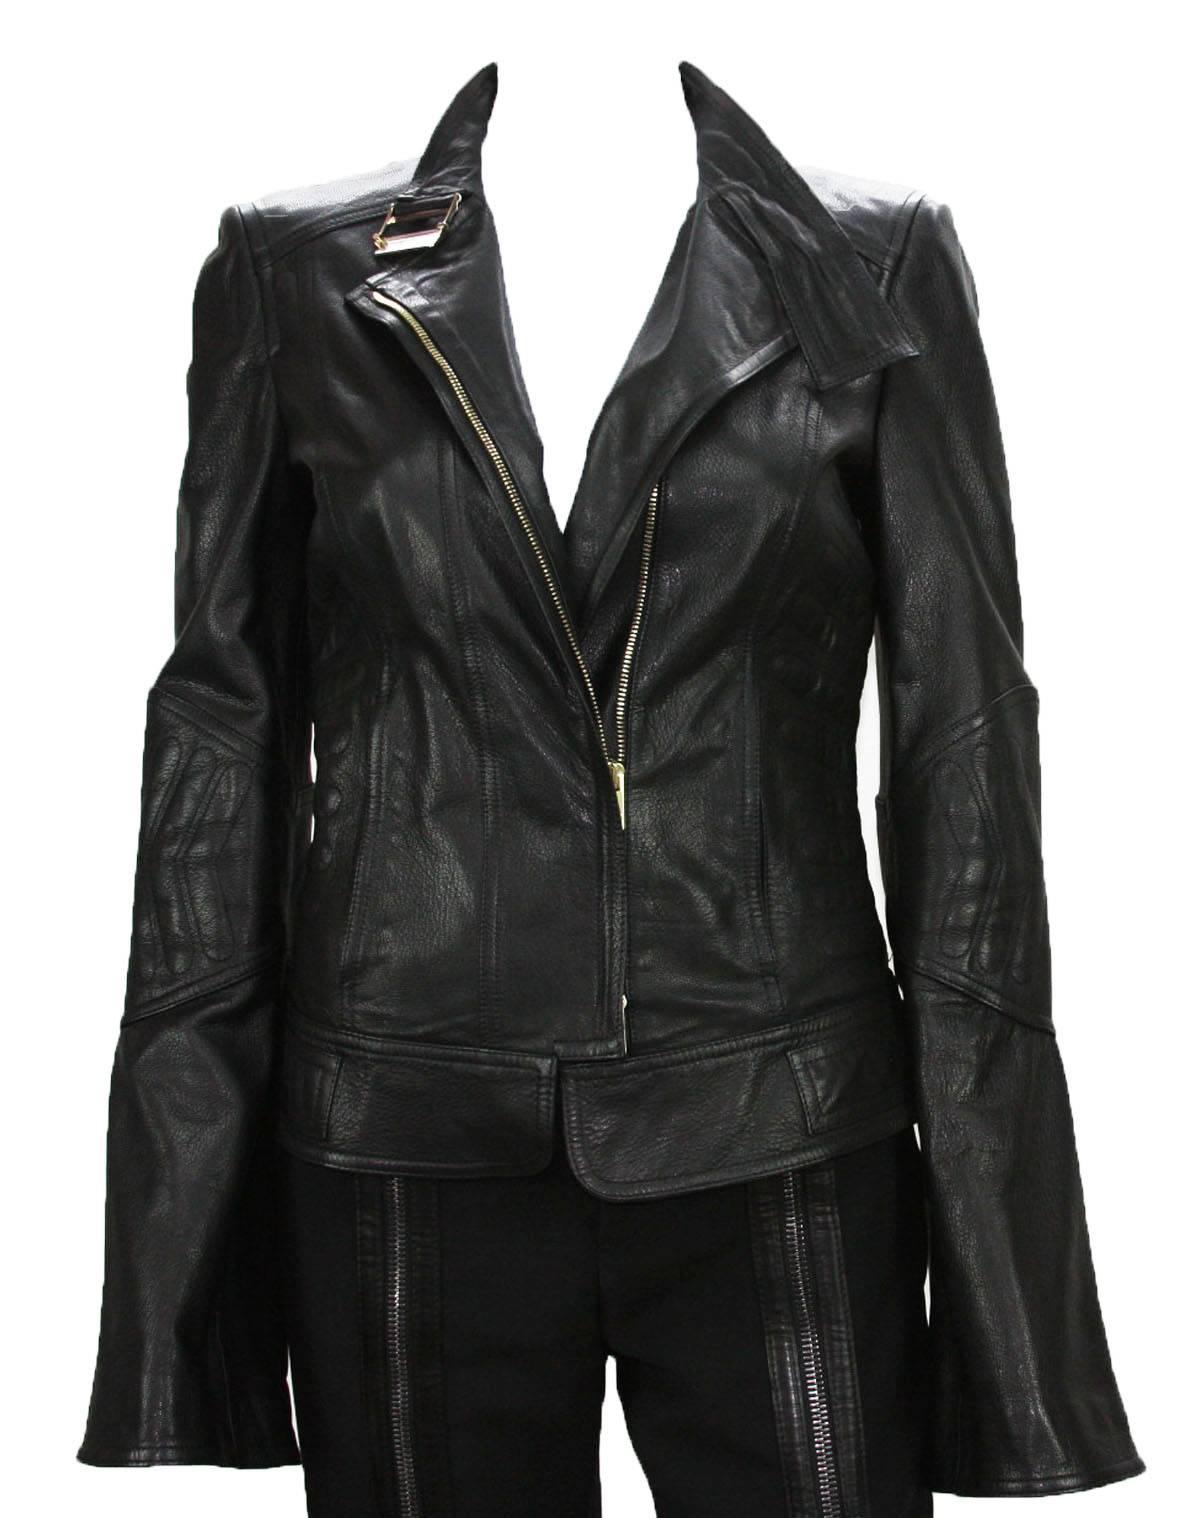 TOM FORD for GUCCI Veste en cuir noir
Taille italienne 40 - US 4
Collectional 2004
100 % cuir, couleur noire, motif chevron, fermeture à glissière.
Deux poches latérales, poignets zippés sur les manches, bretelles latérales réglables.
Mesures :